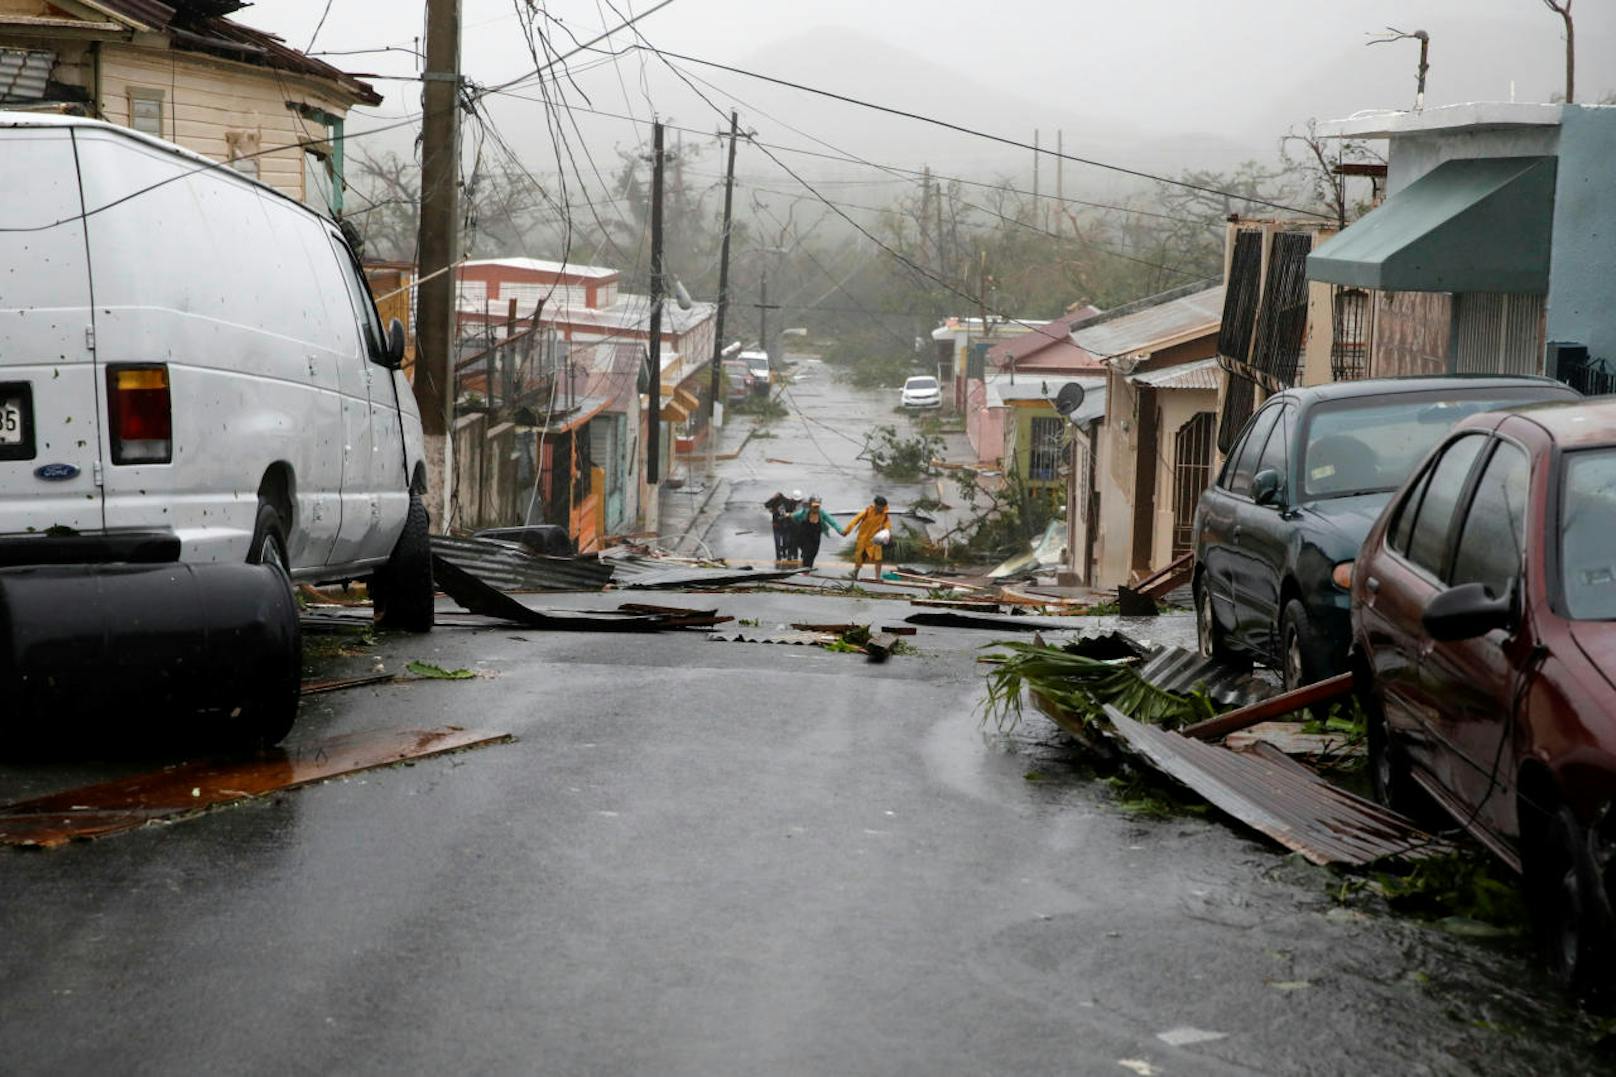 <b>20. September 2017:</b> Die sonst so paradiesischen Karibikinseln wurden vom bereits dritten Monster-Wirbelsturm innerhalb von zwei Wochen getroffen. <b>Hurrikan Maria</b> wütete in San Juan, Puerto Rico und hinterließ große Schäden. 

<b>Mehr Infos:</b> <a href="https://www.heute.at/welt/news/story/-Katastrophal---Hurrikan--Maria--erreicht-Stufe-5-51466964" target="_blank">"Katastrophal": Hurrikan "Maria" hat höchste Stufe</a>